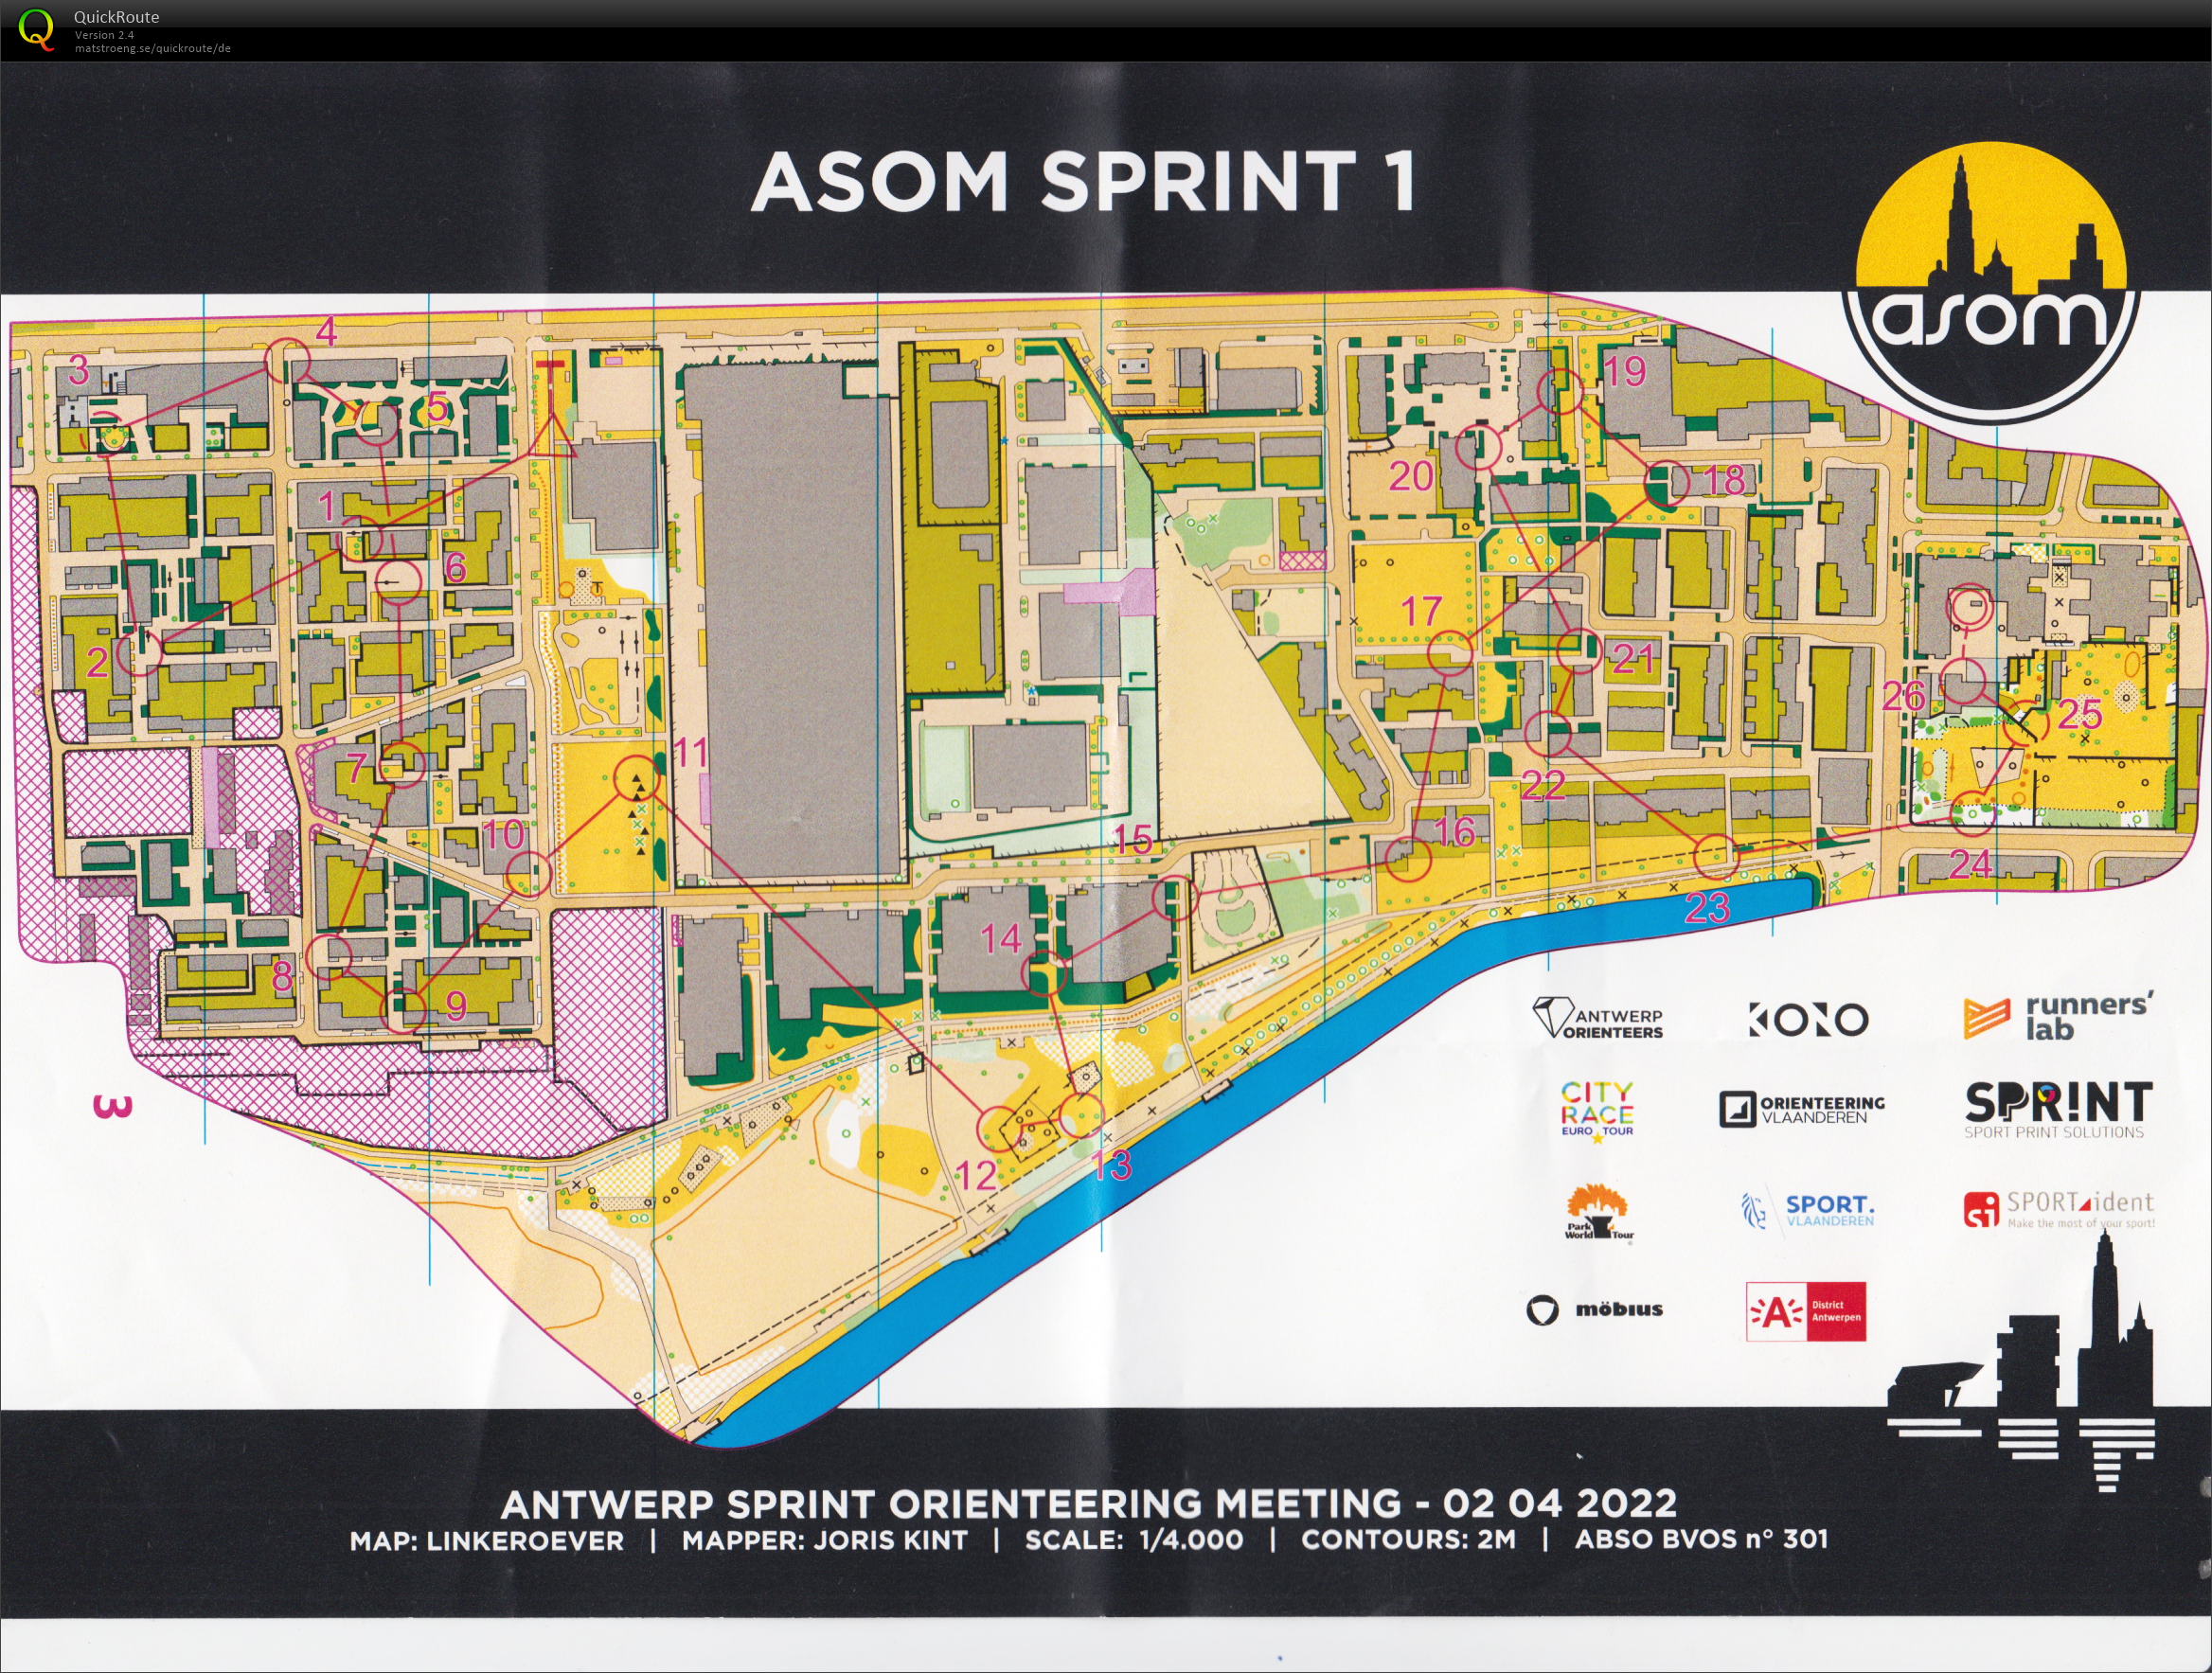 ASOM Sprint 1 (02/04/2022)